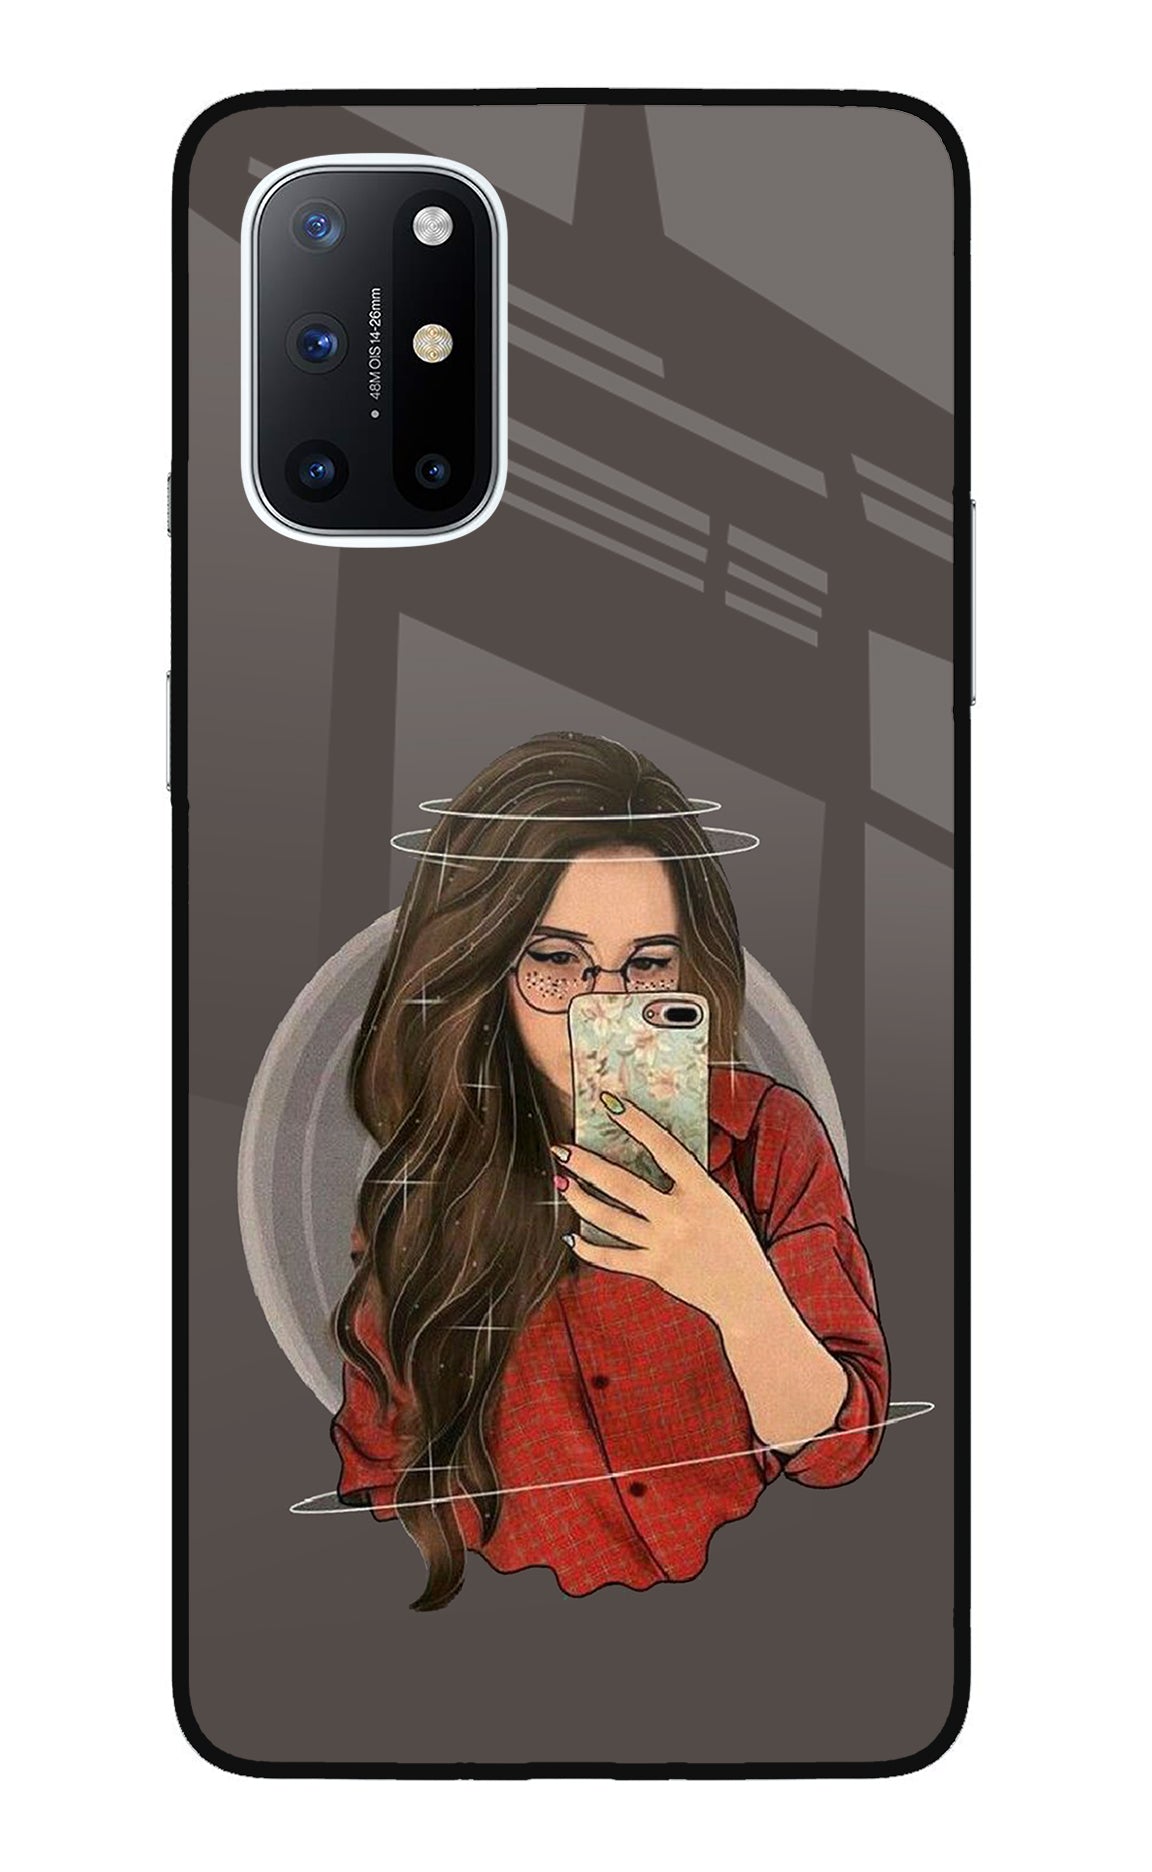 Selfie Queen Oneplus 8T Glass Case